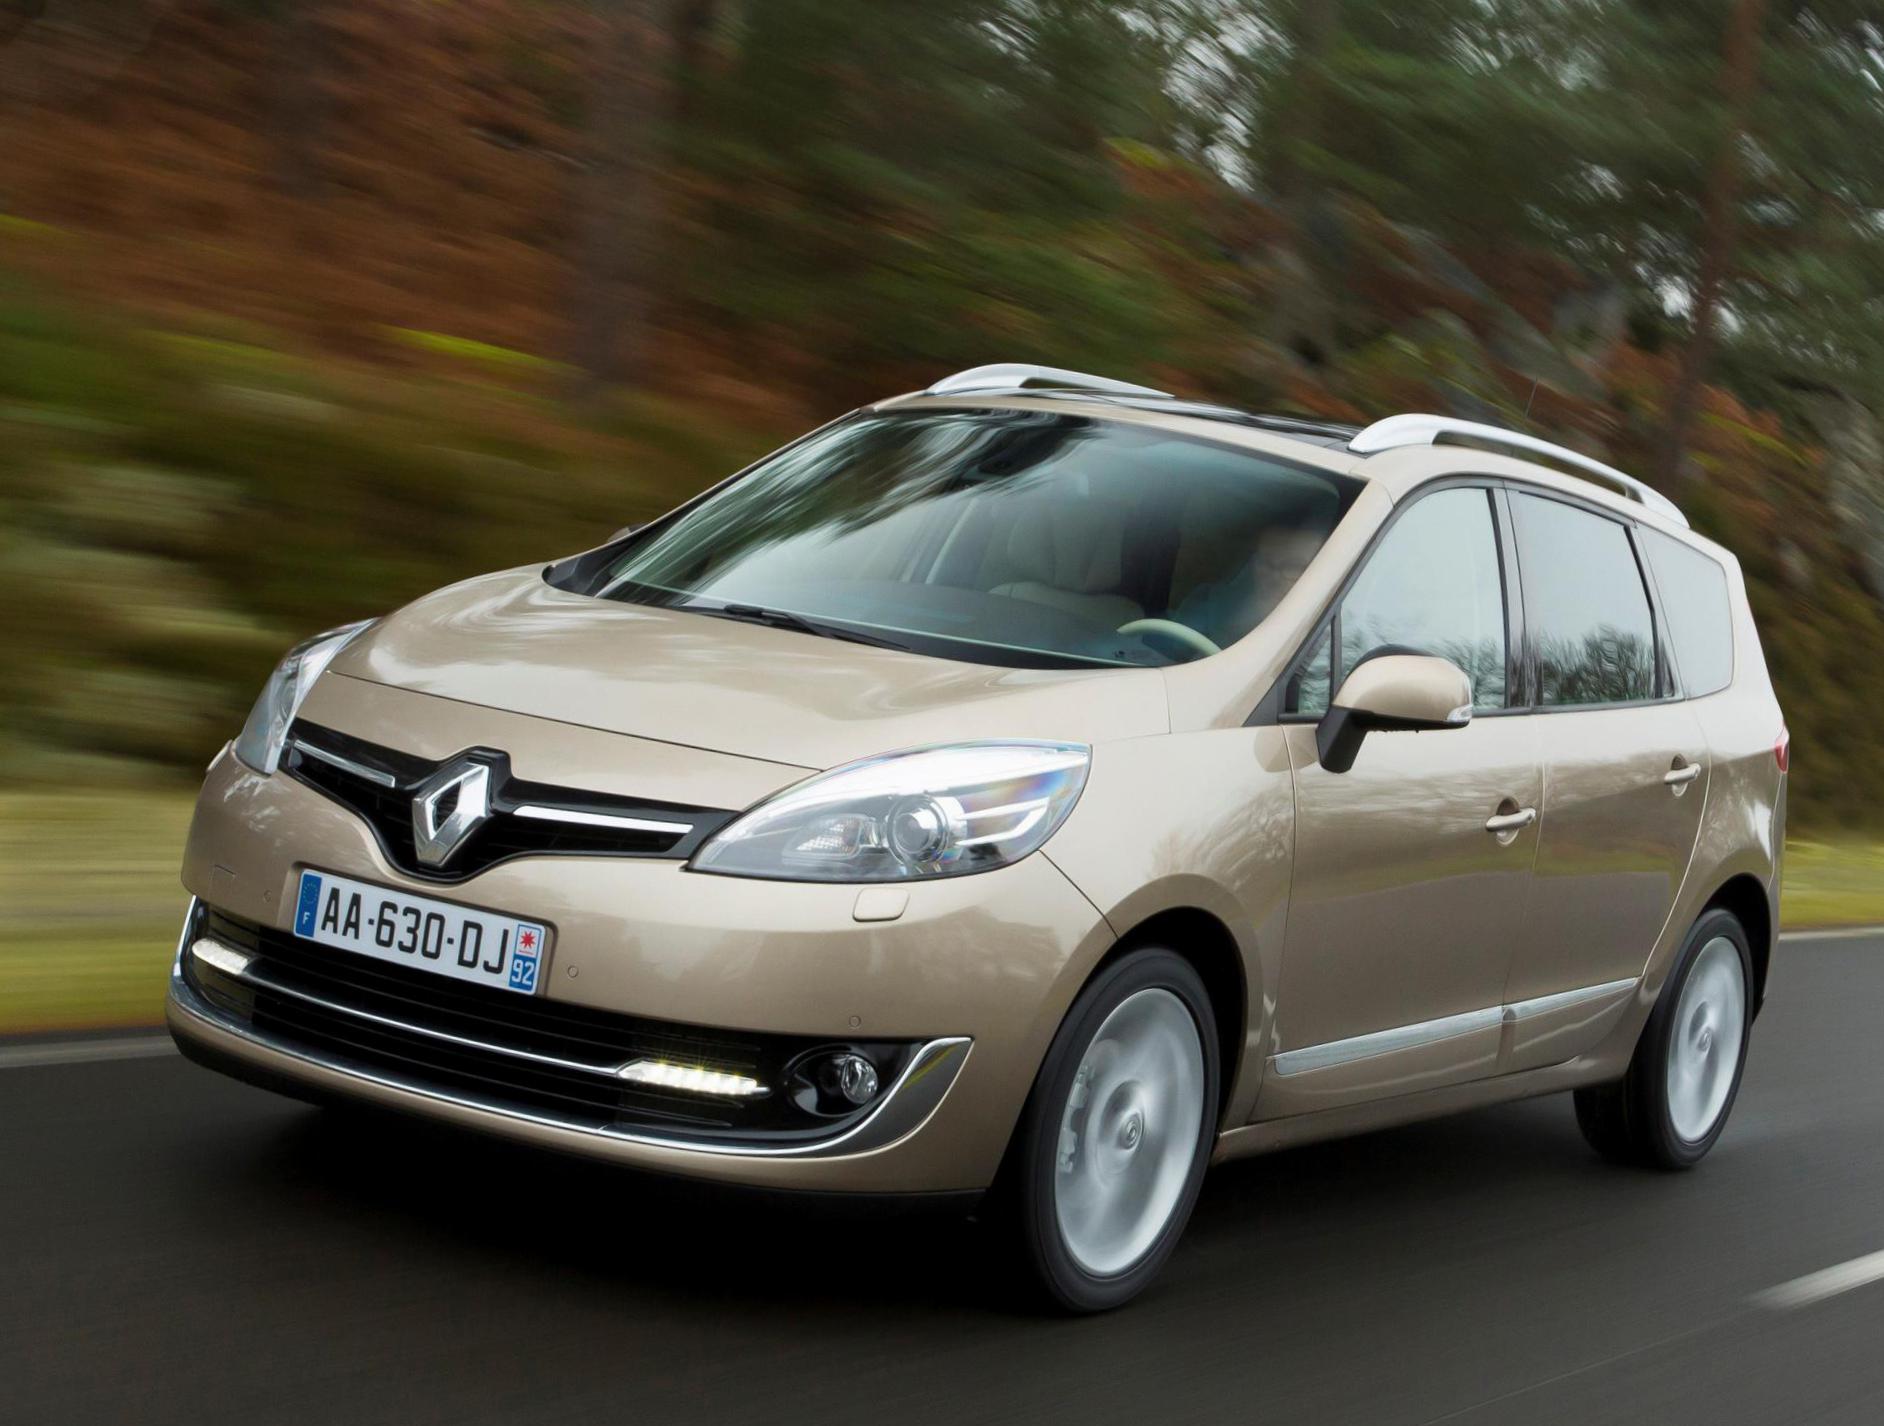 Renault Scenic prices minivan